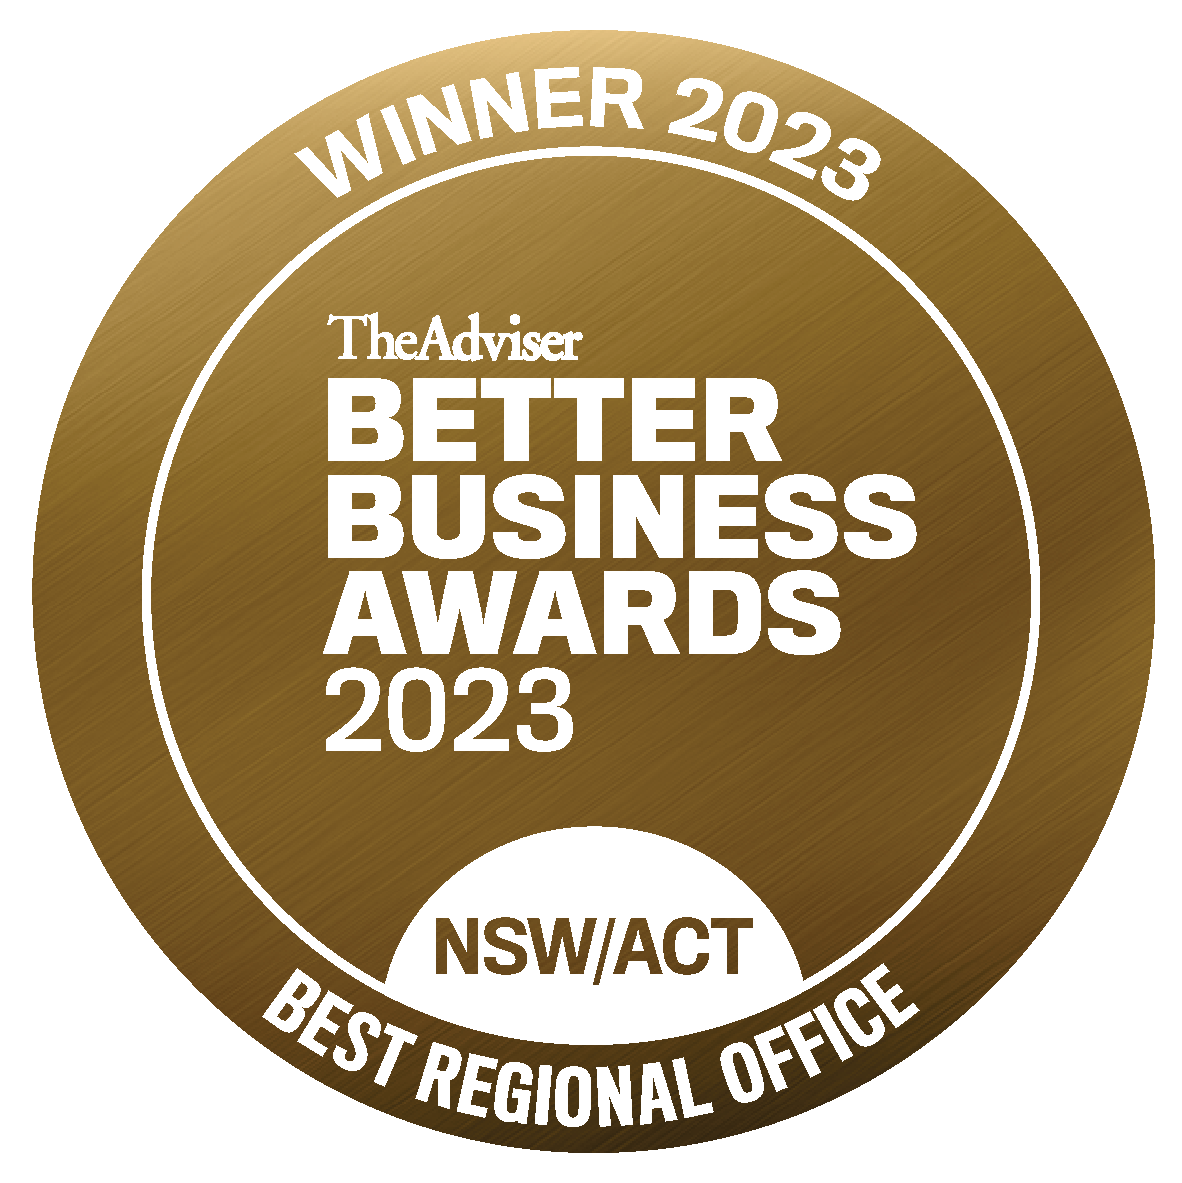 Winner seal__NSW_Best Regional Office